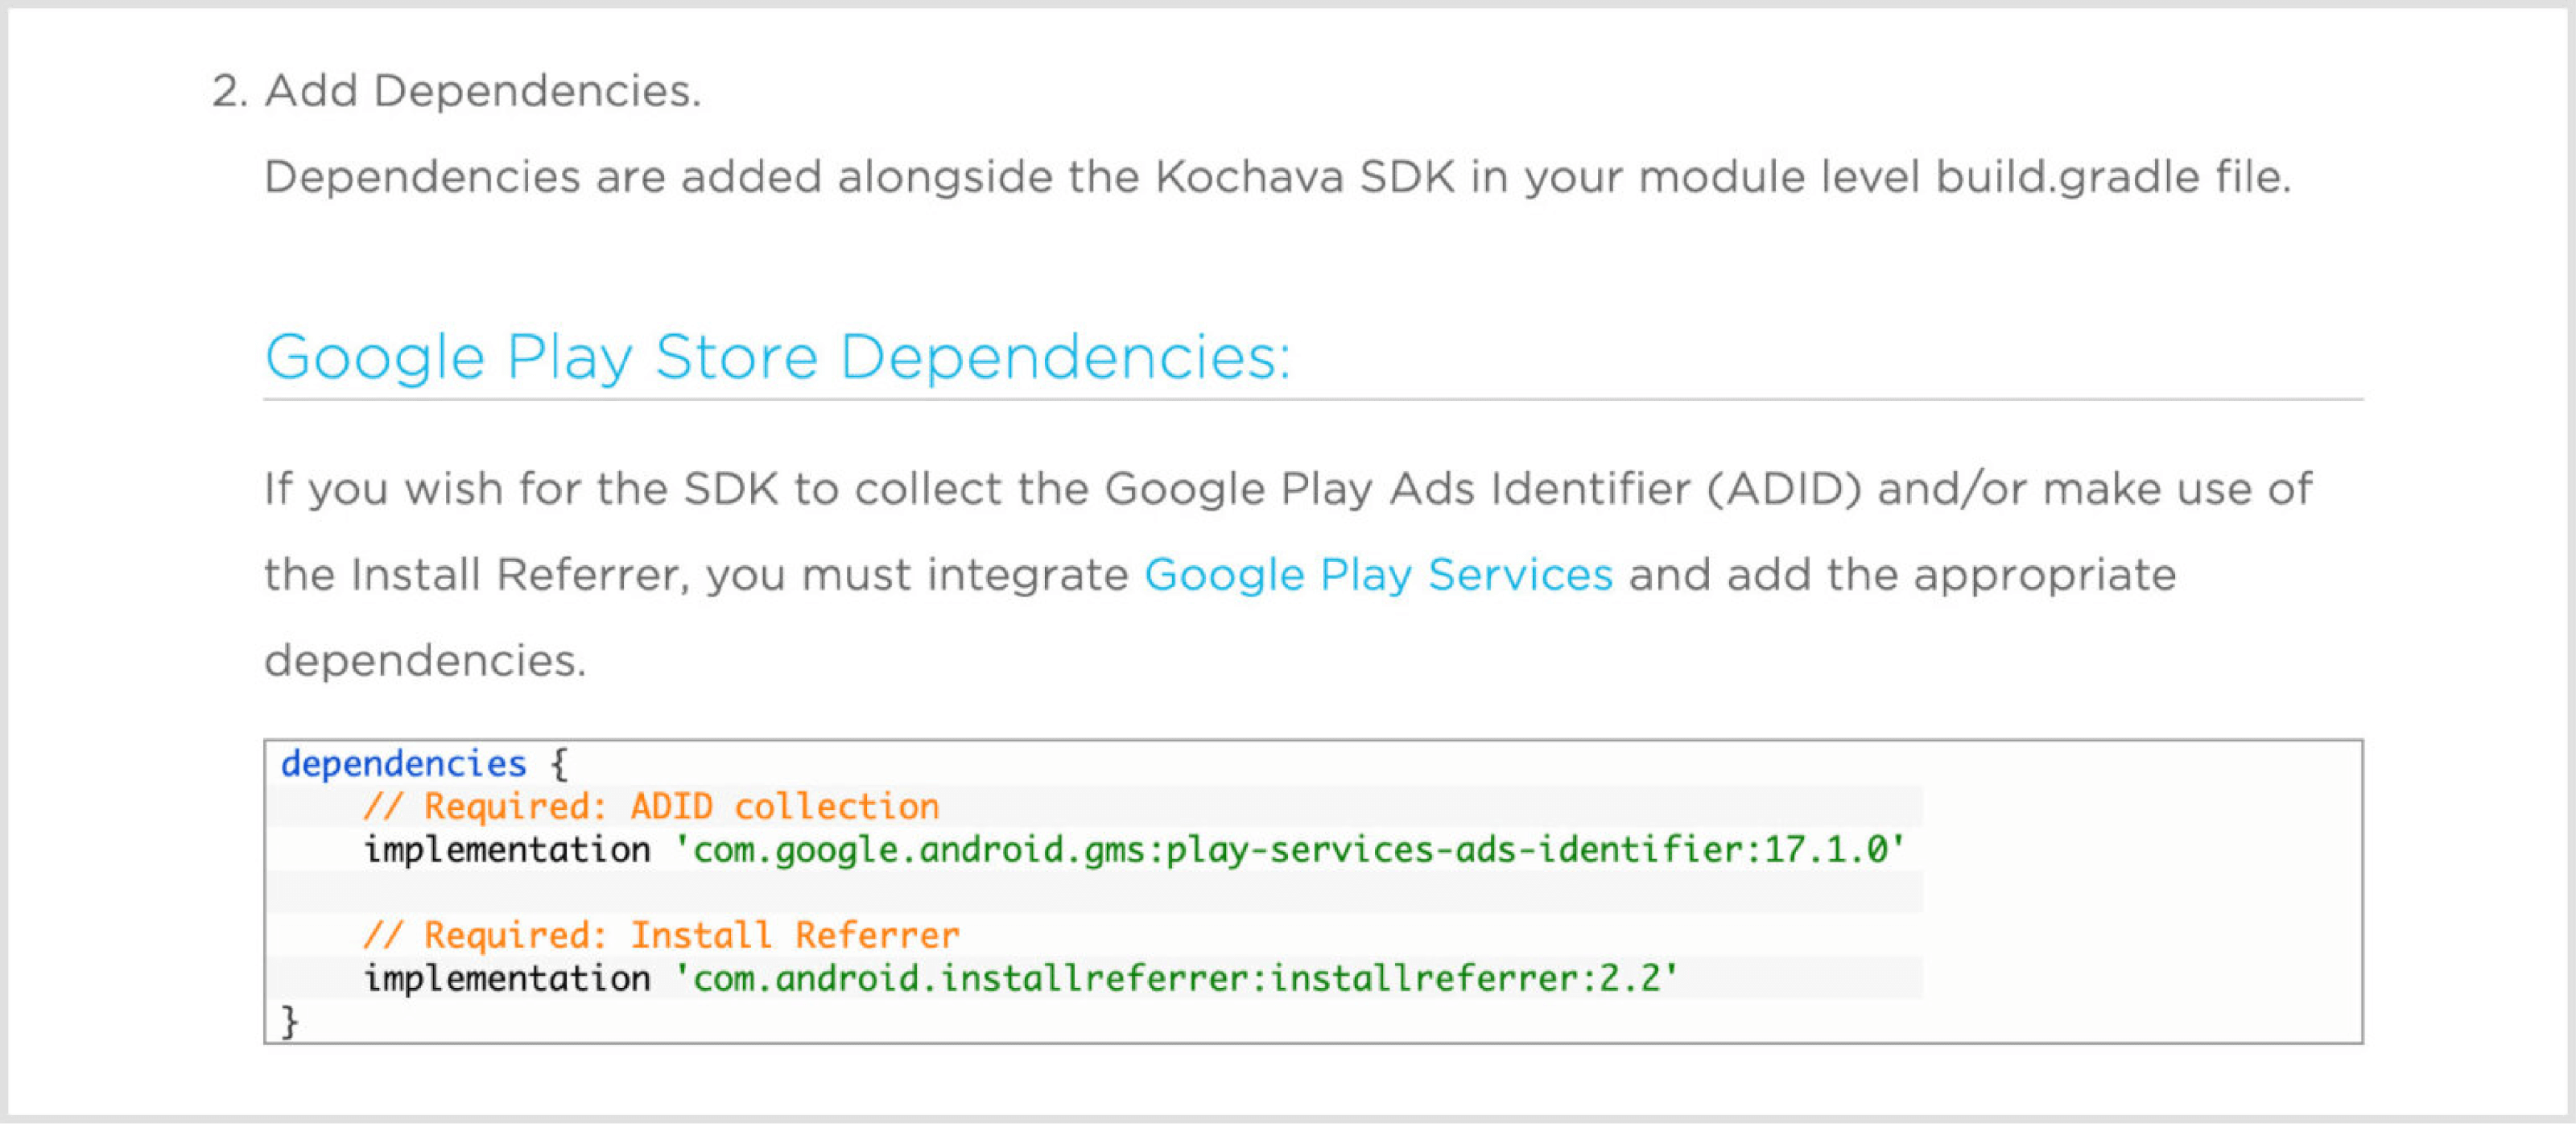 Google Play Store Dependencies